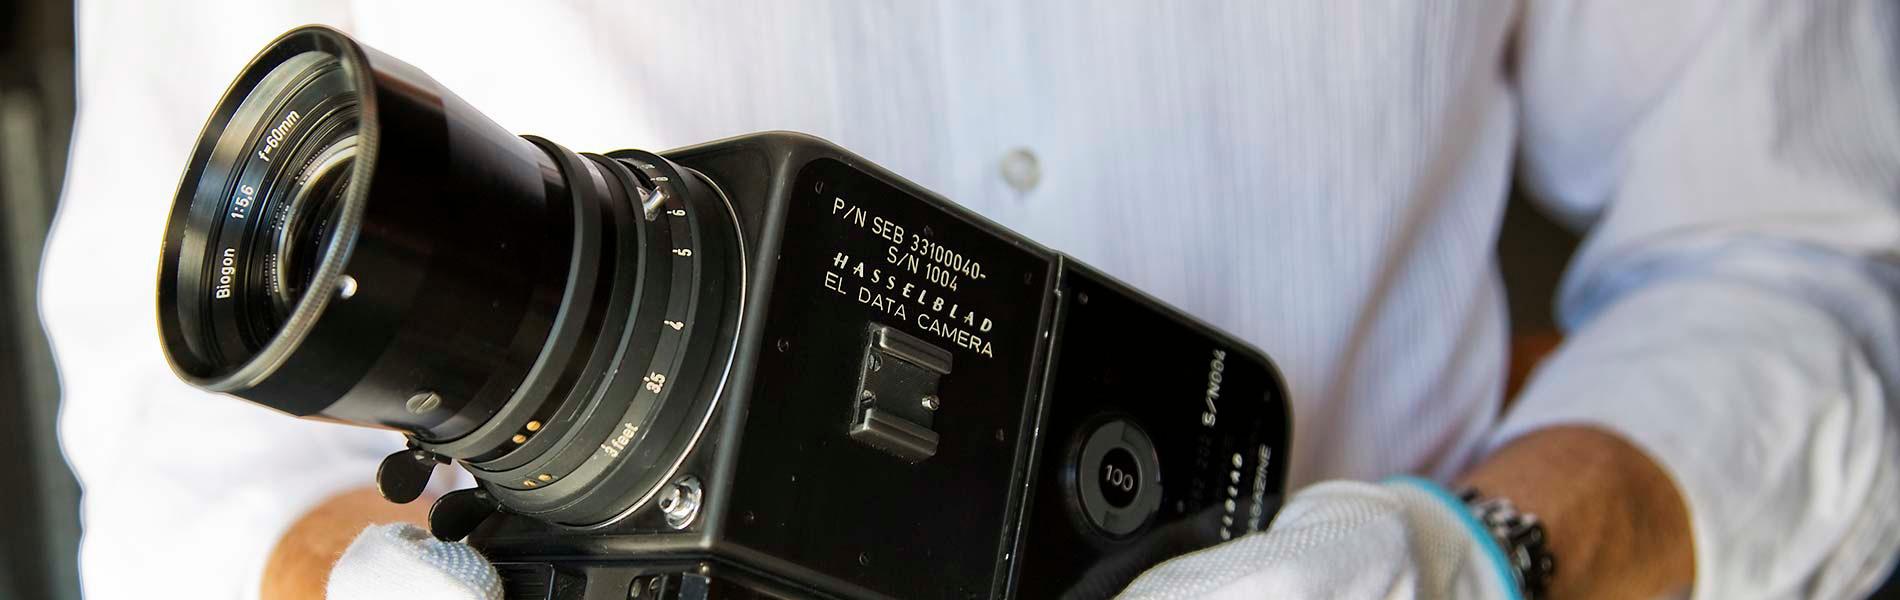 Камера Hasselblad, сконструированная для работы в космосе